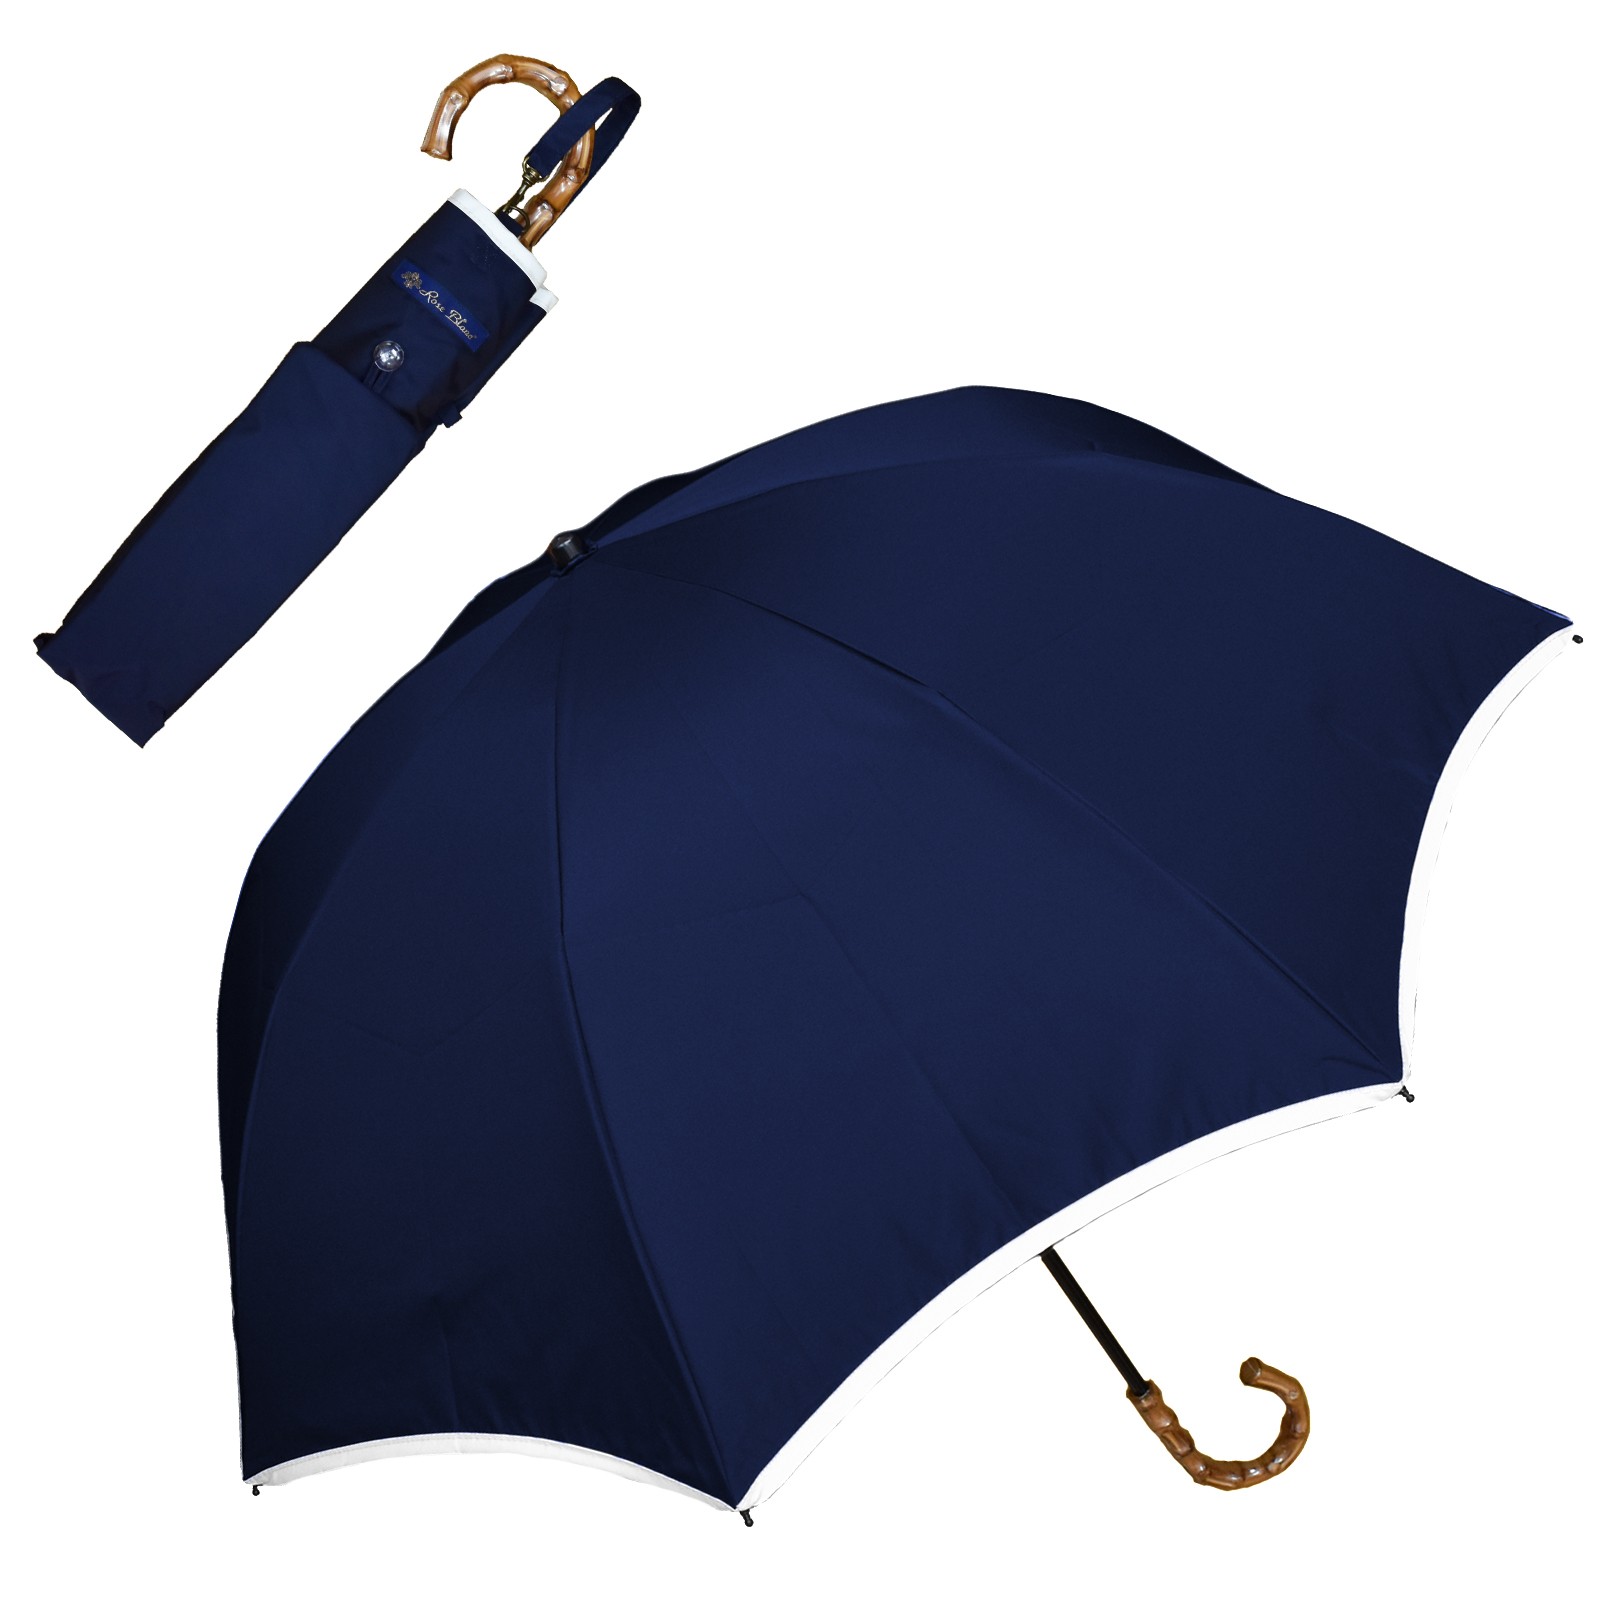 日傘 完全遮光 折りたたみ uv 晴雨兼用 軽量 2段 折りたたみ傘 遮光 100% 遮熱 おしゃれ パイピング 50cm (傘袋付) ロサブラン